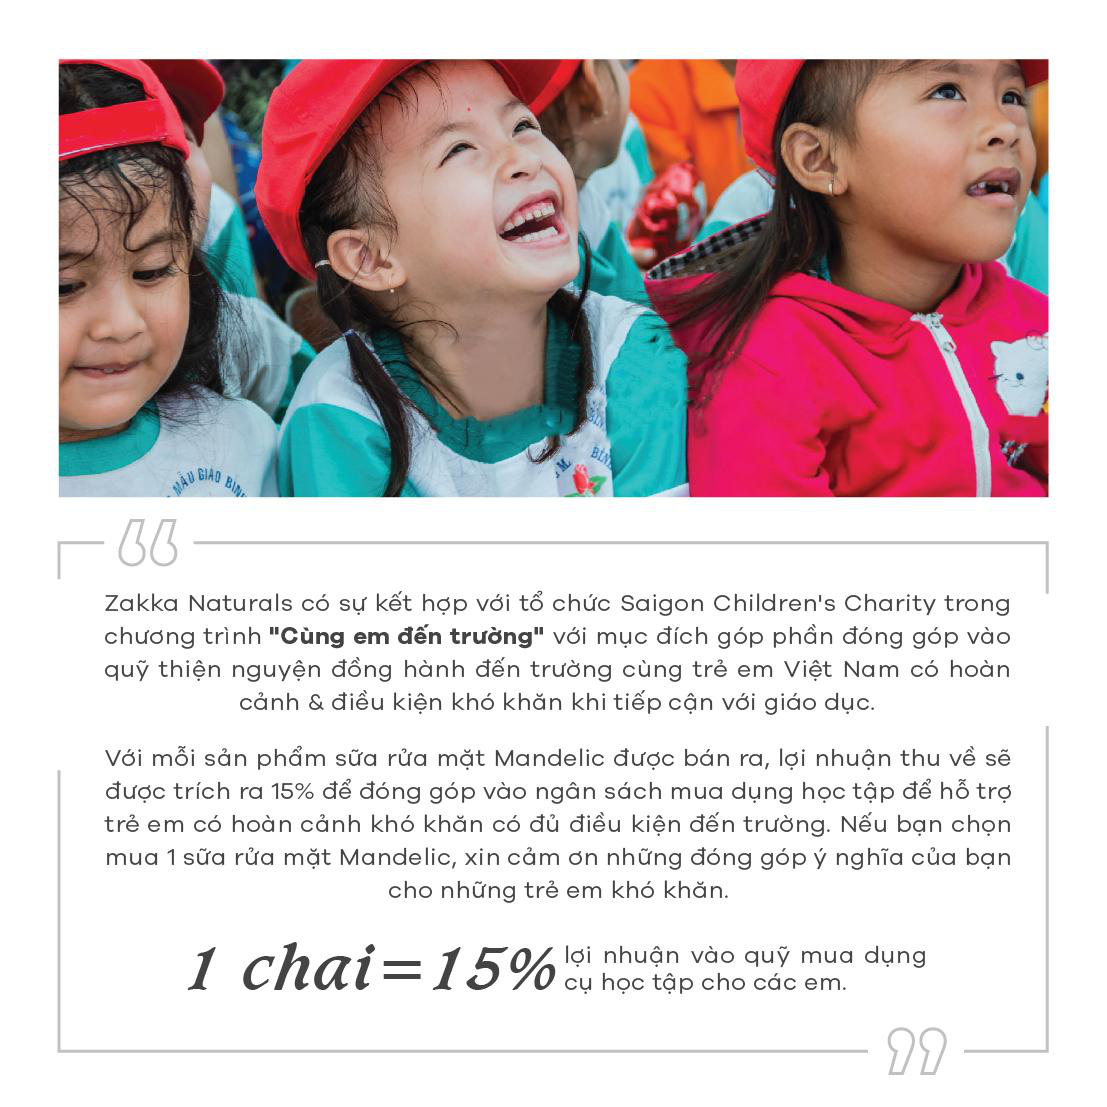 Zakka Naturals chung tay cùng Saigon Childrens Charity giúp đỡ học sinh khó khăn tại Trà Vinh - Ảnh 4.